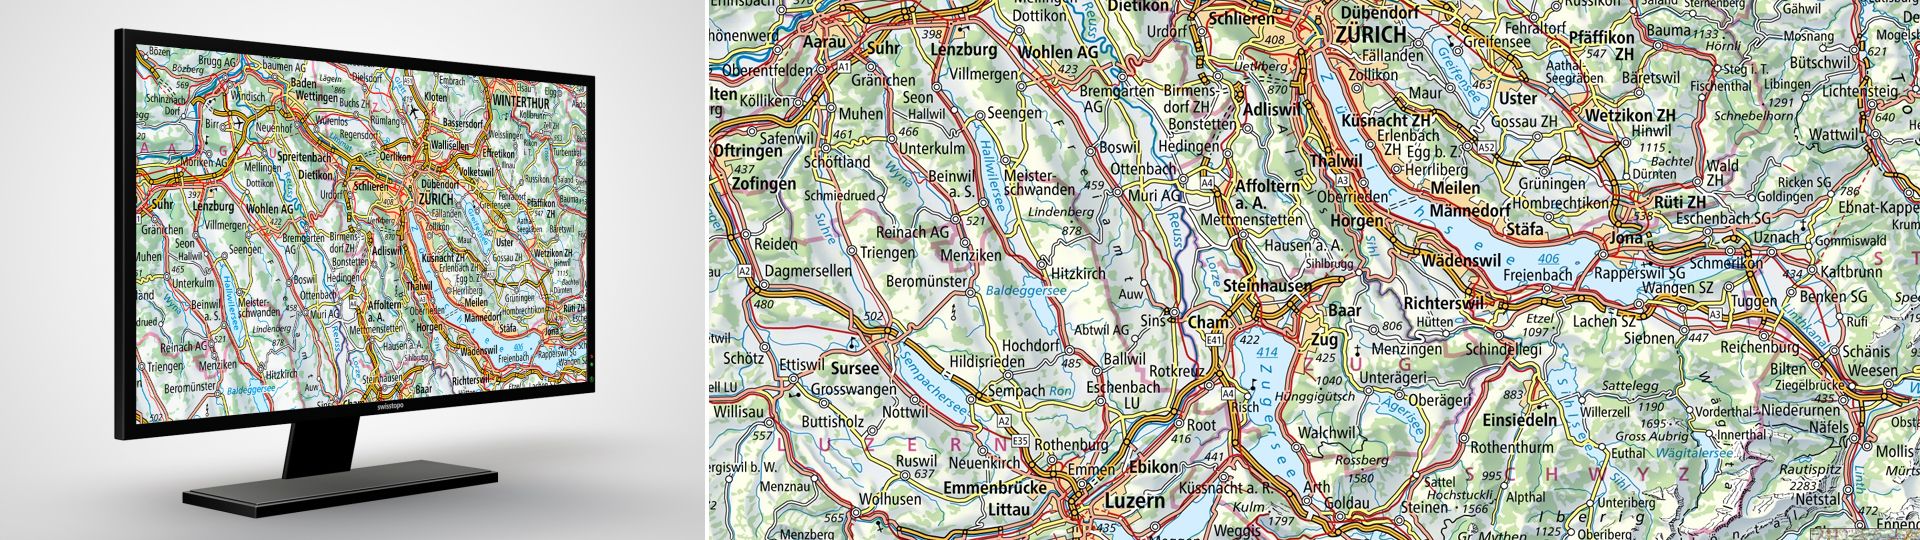 Swiss Map Raster 500: les cartes nationales de la Suisse au 1:500 000 en format raster